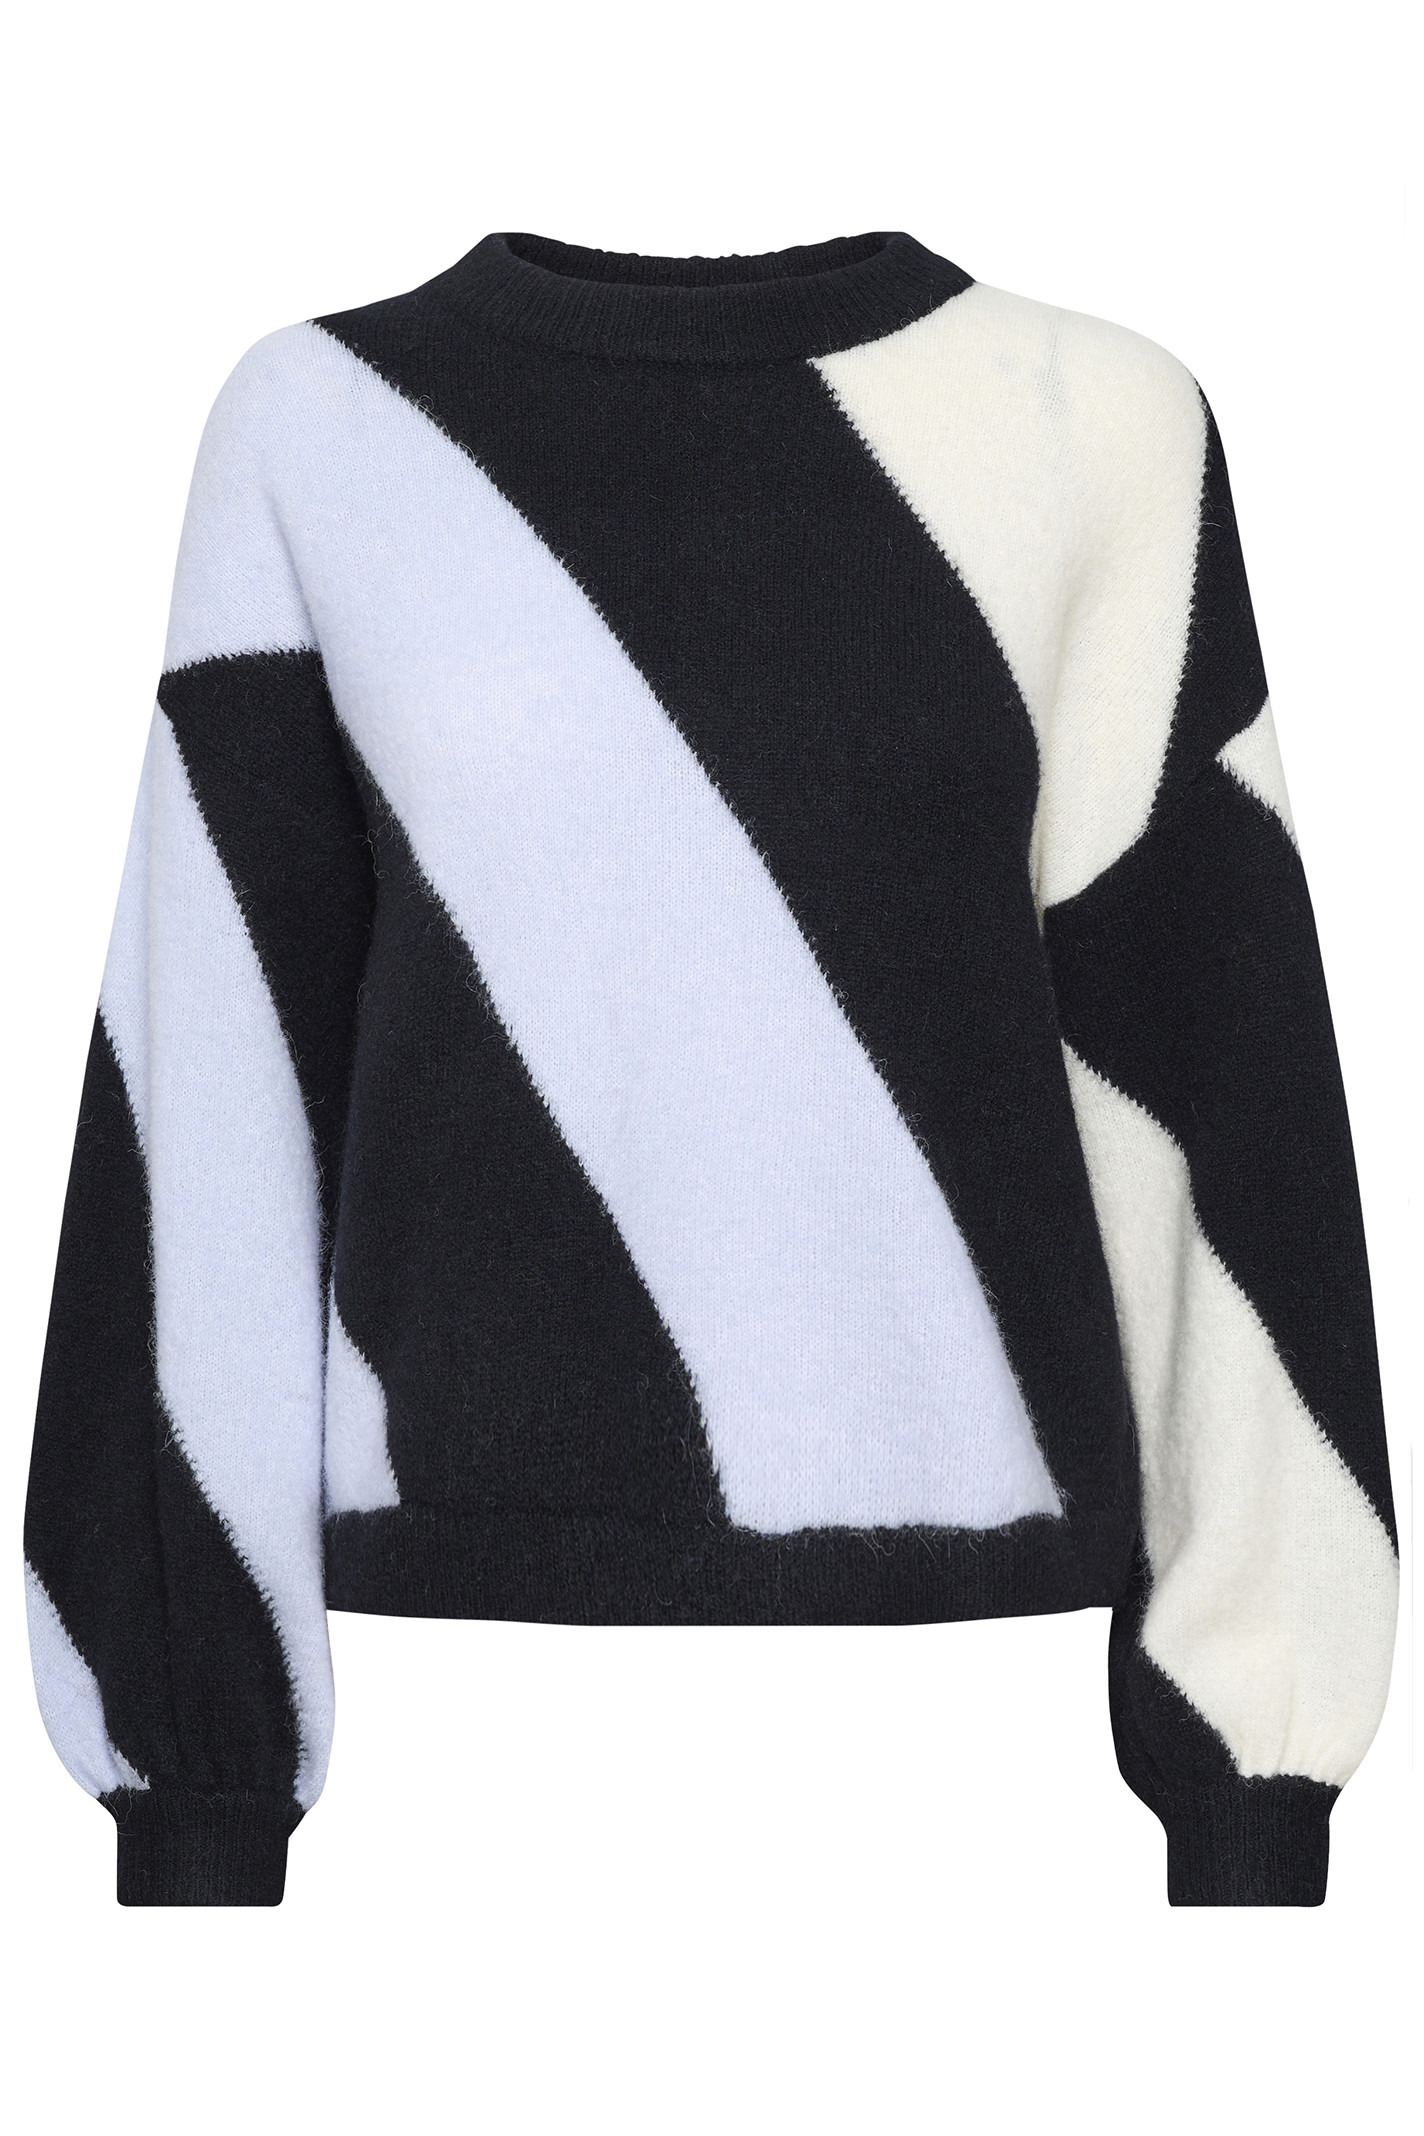 Trække ud brud sweater 10905892 STRIK Xenon Black White Stripe fra GESTUZ.